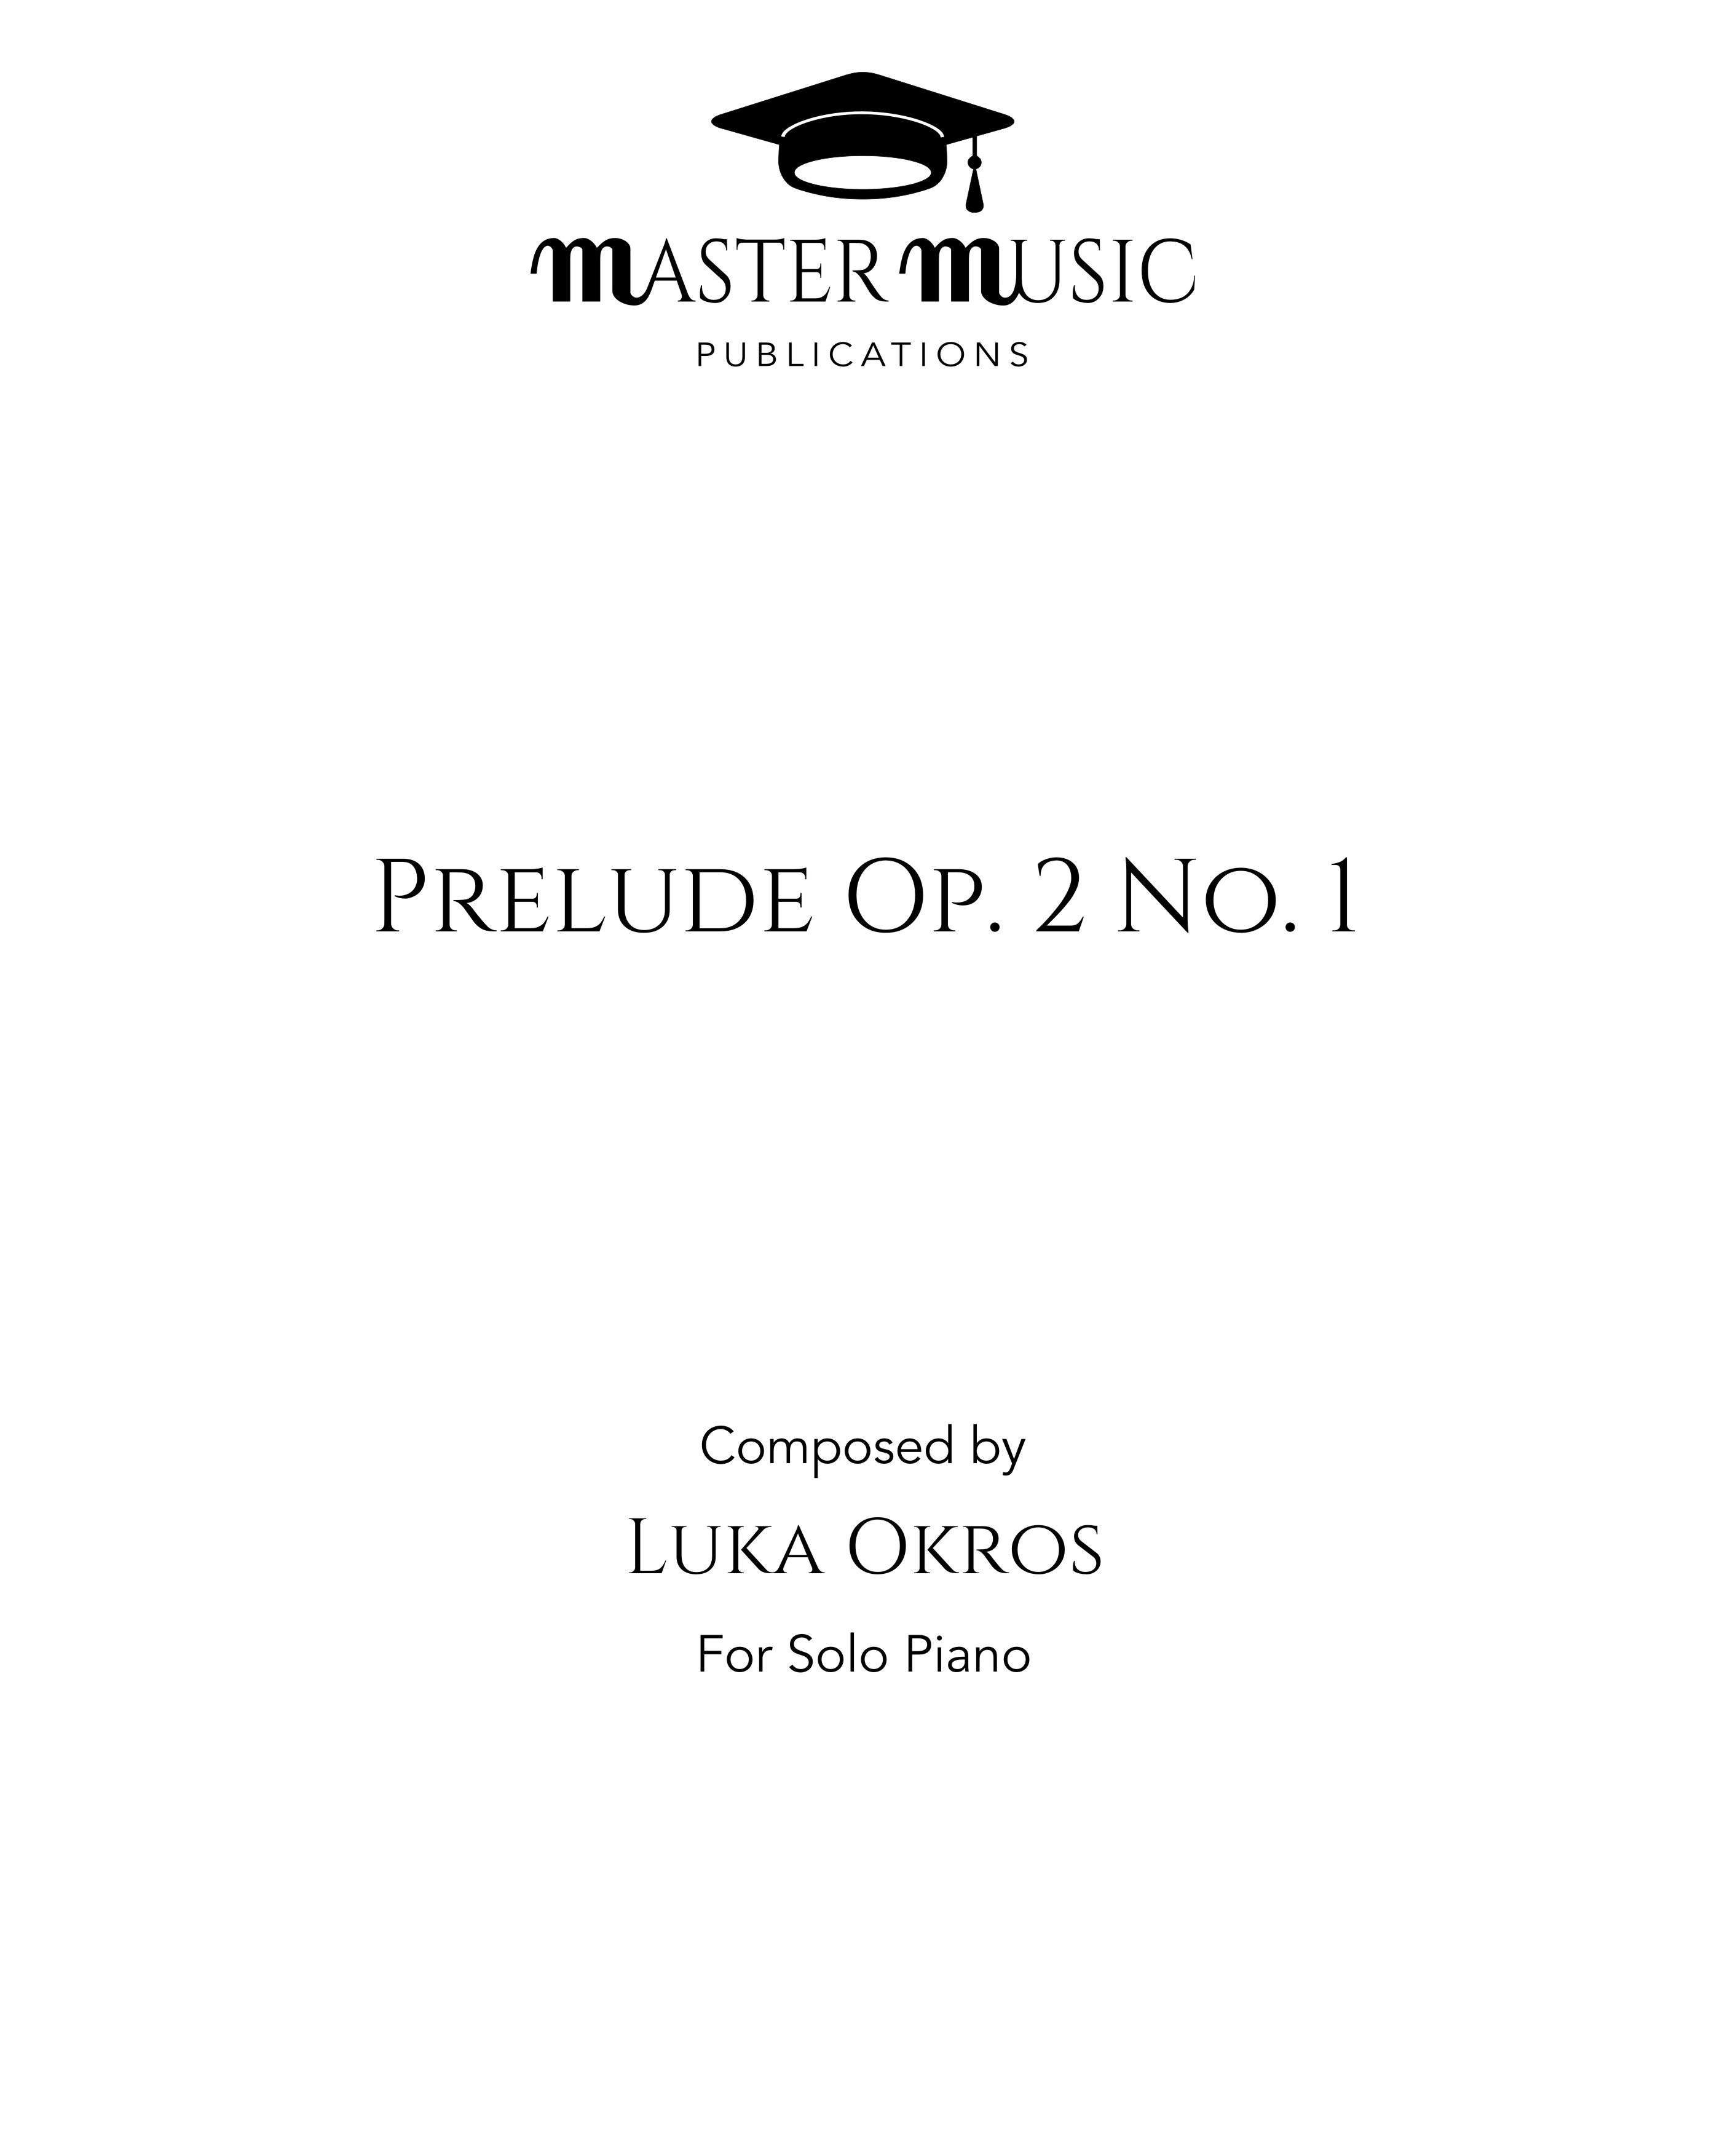 Prelude Op. 2 No. 1